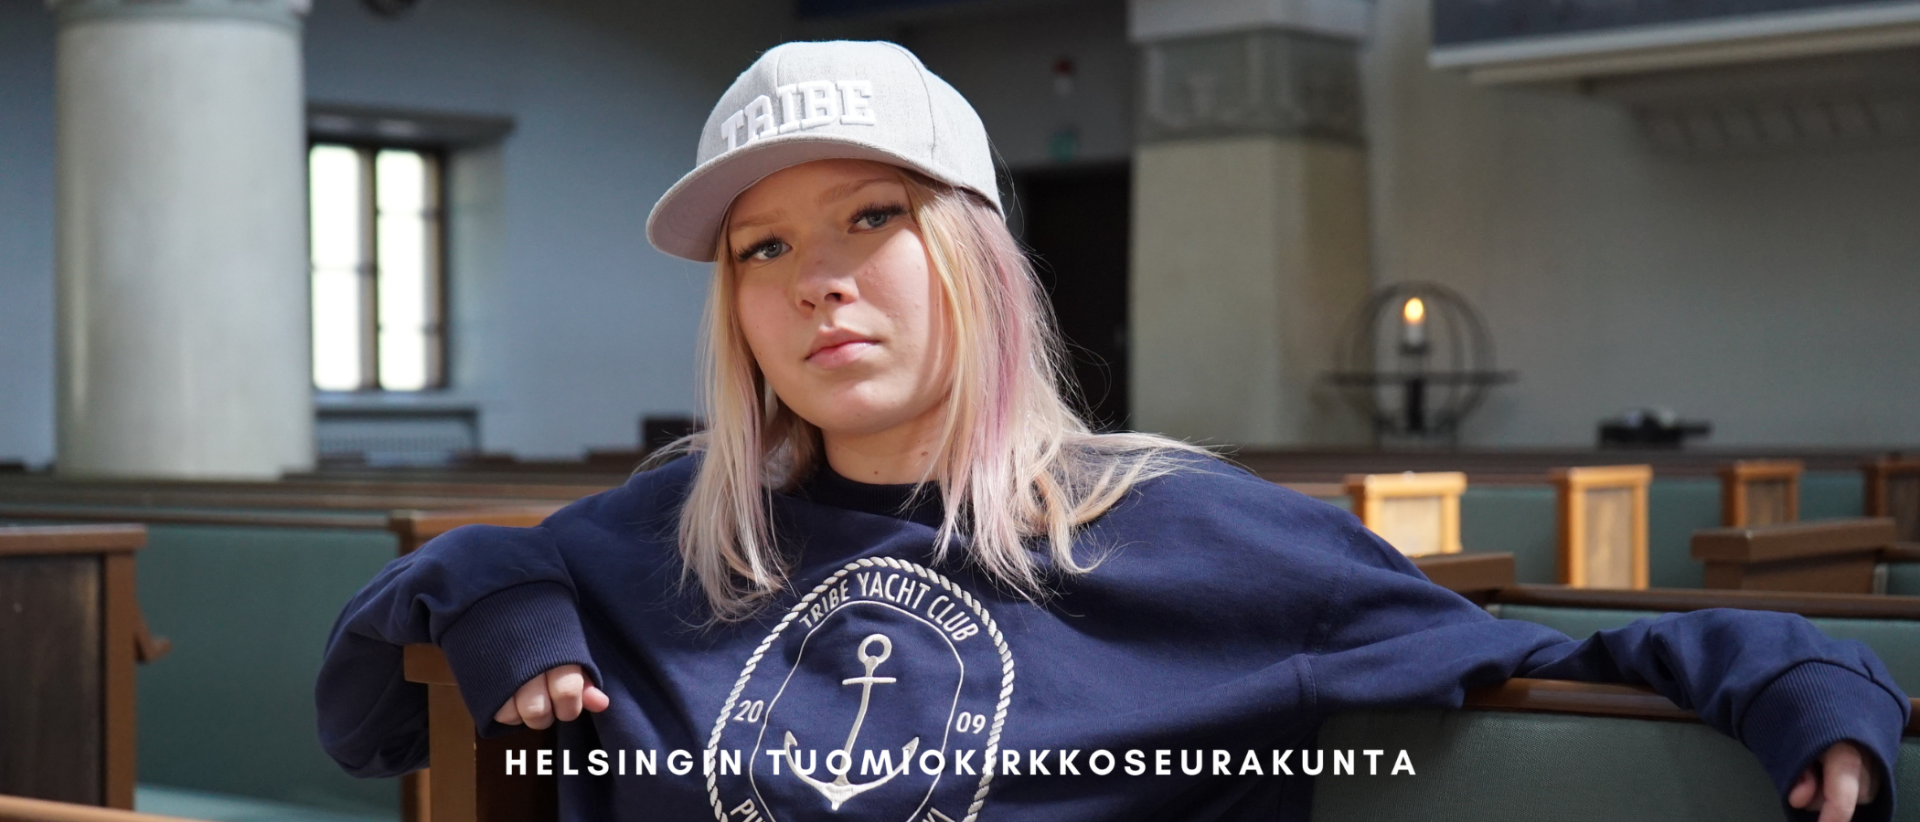 Anni Mäkinen tuo Helsingin nuorten äänen yhteiseen kirkkoneuvostoon